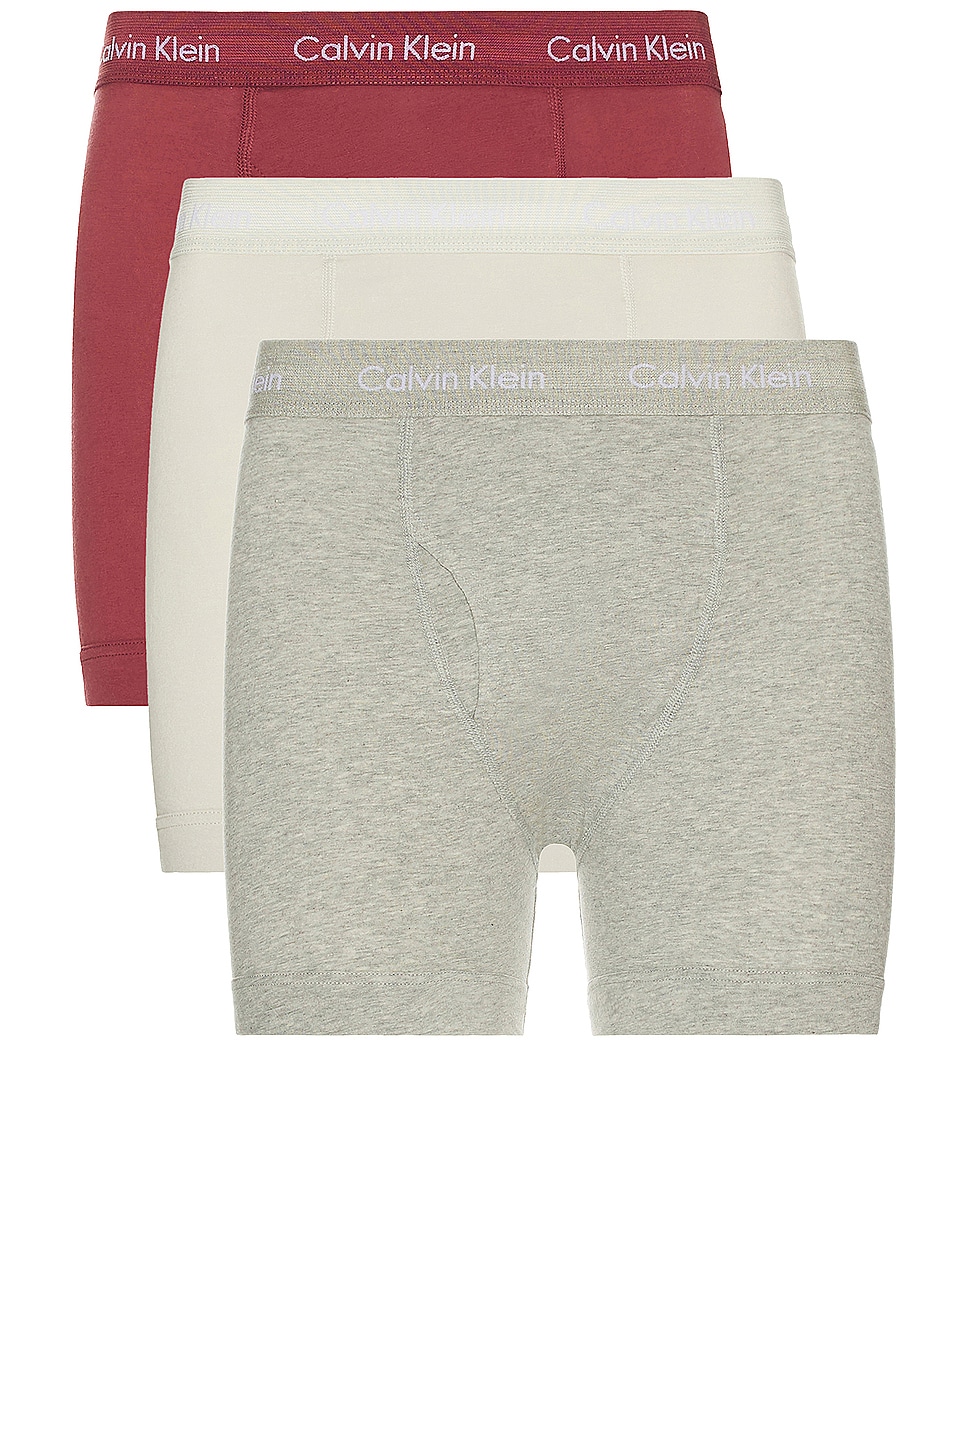 Image 1 of Calvin Klein Underwear Boxer Brief 3-pack in B10 Grey Heather, Silver Birch, & Raspberry Blush